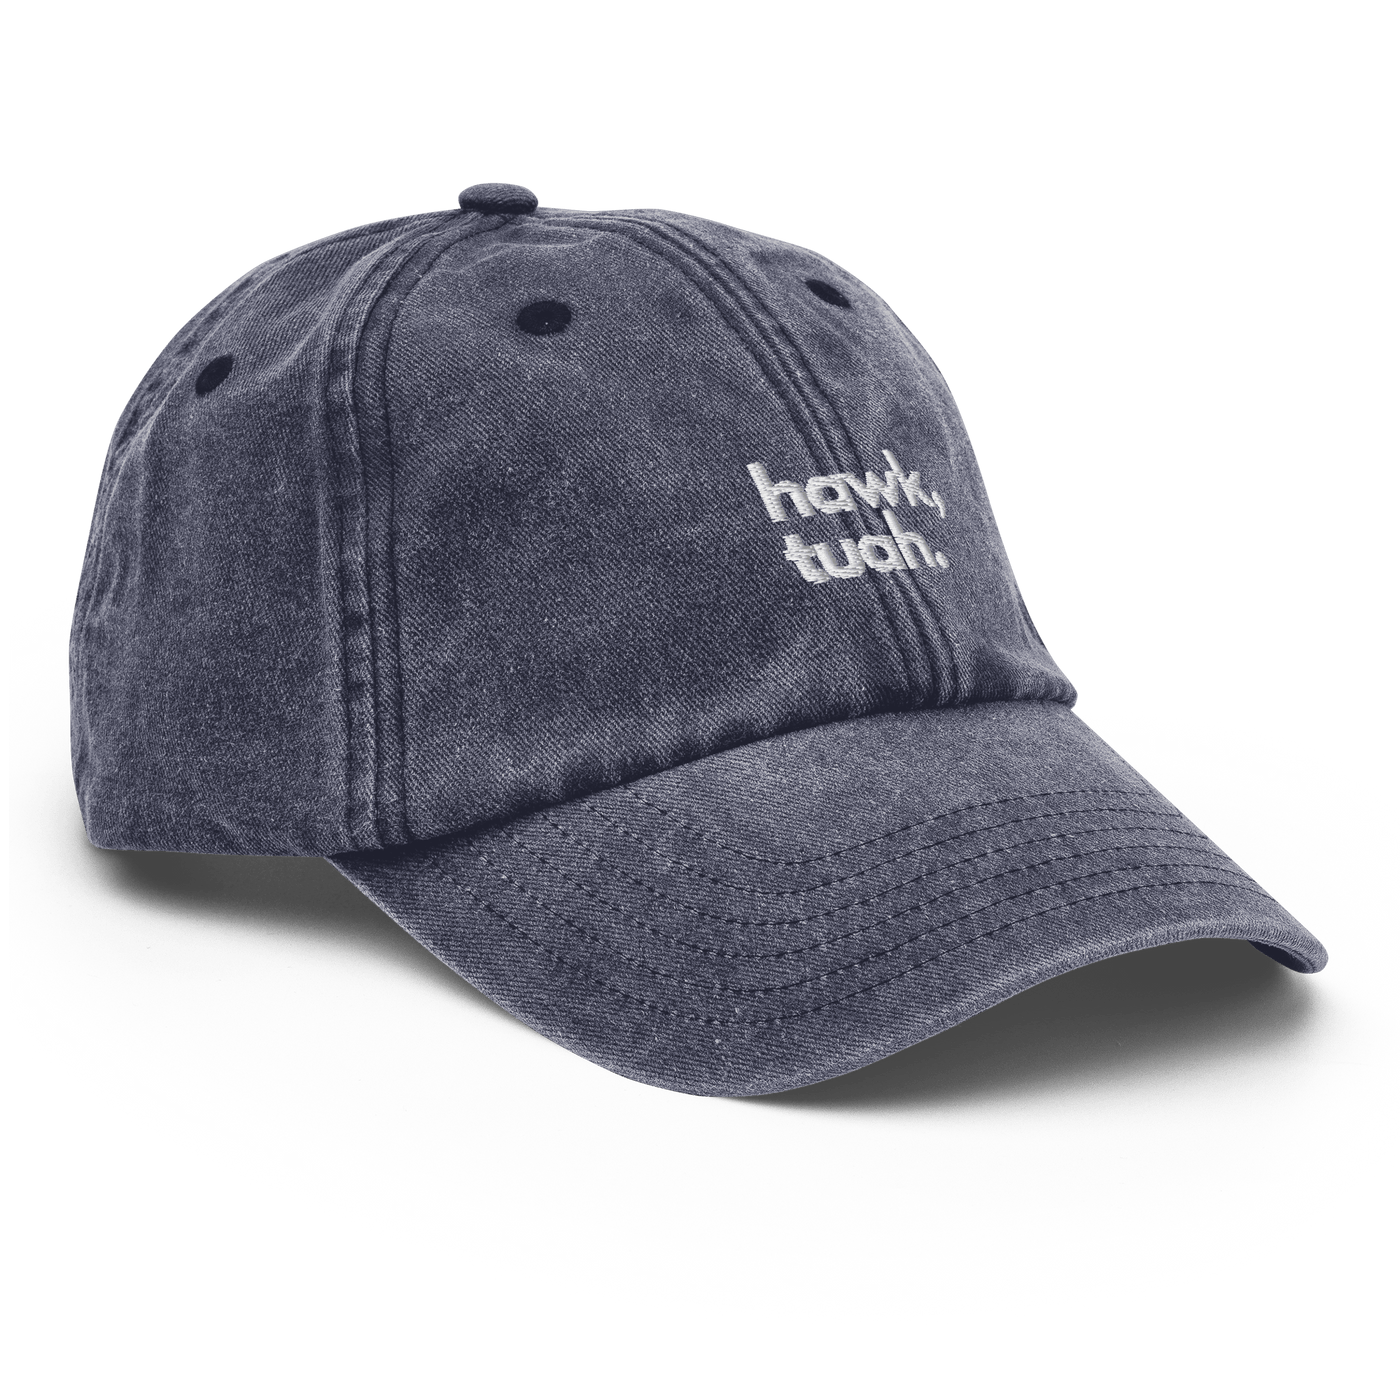 Hawk Tuah Vintage Hat - Vintage Denim - Just Another Cap Store